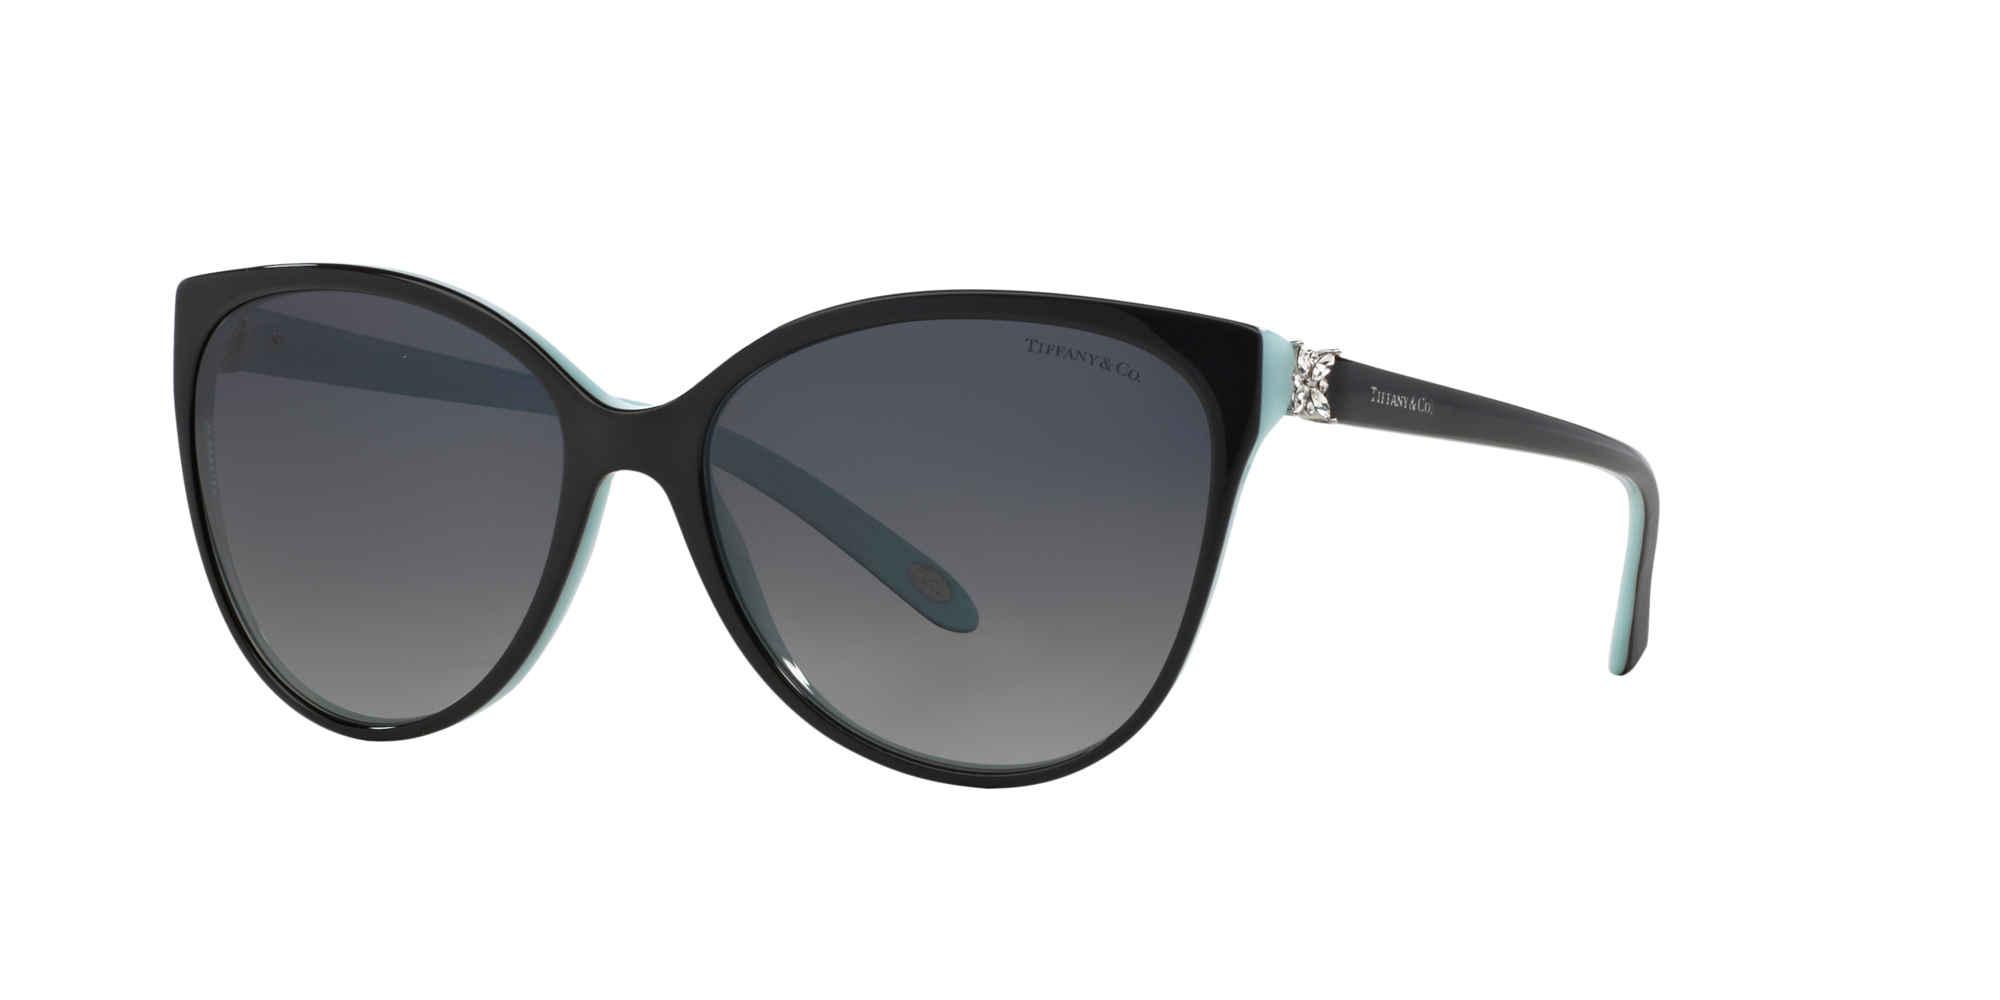 tiffany sunglasses 4089b